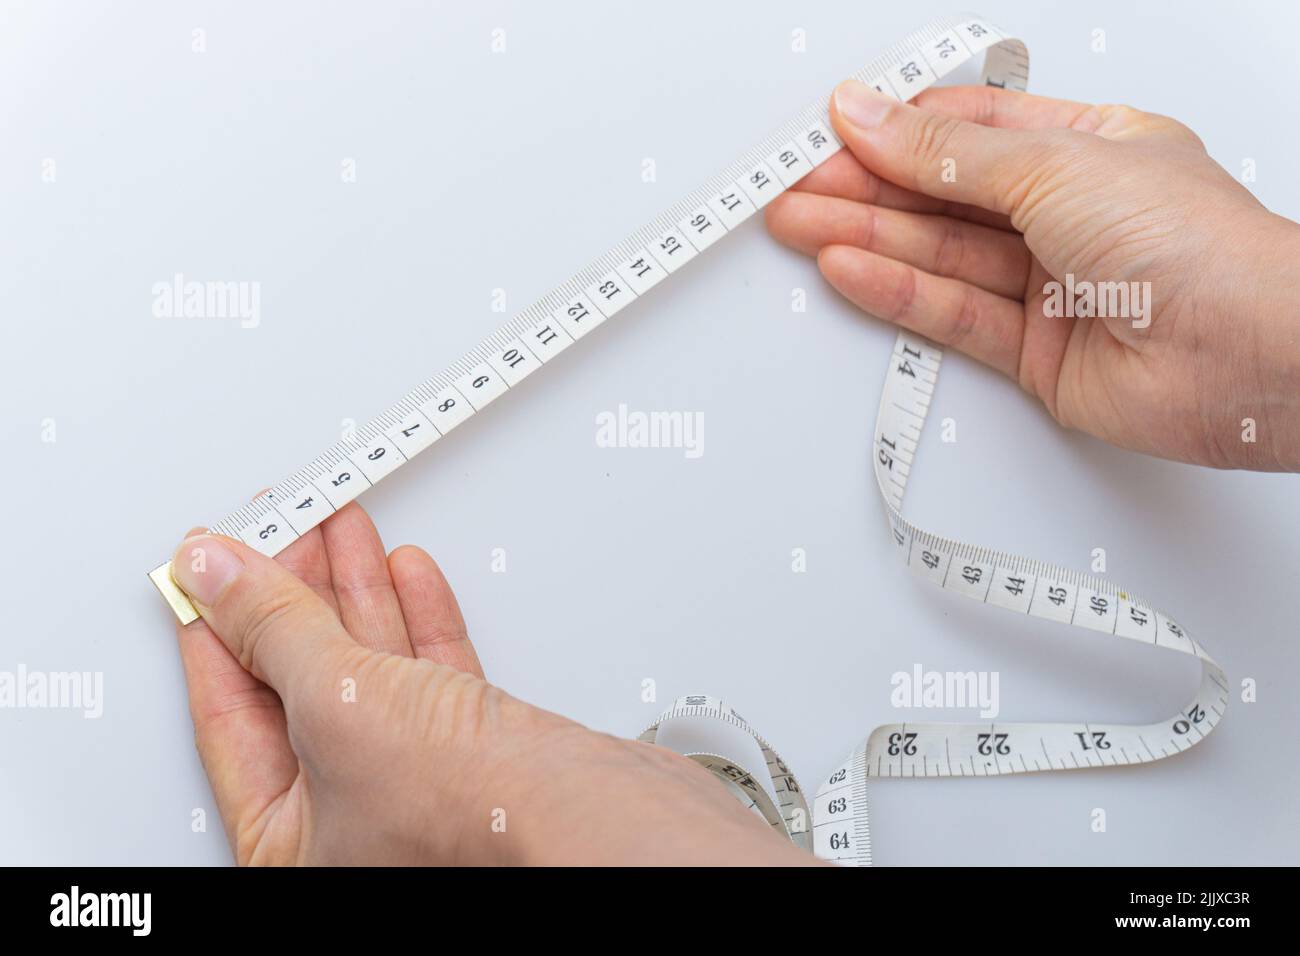 Cinta métrica para medir varias partes del cuerpo Fotografía de